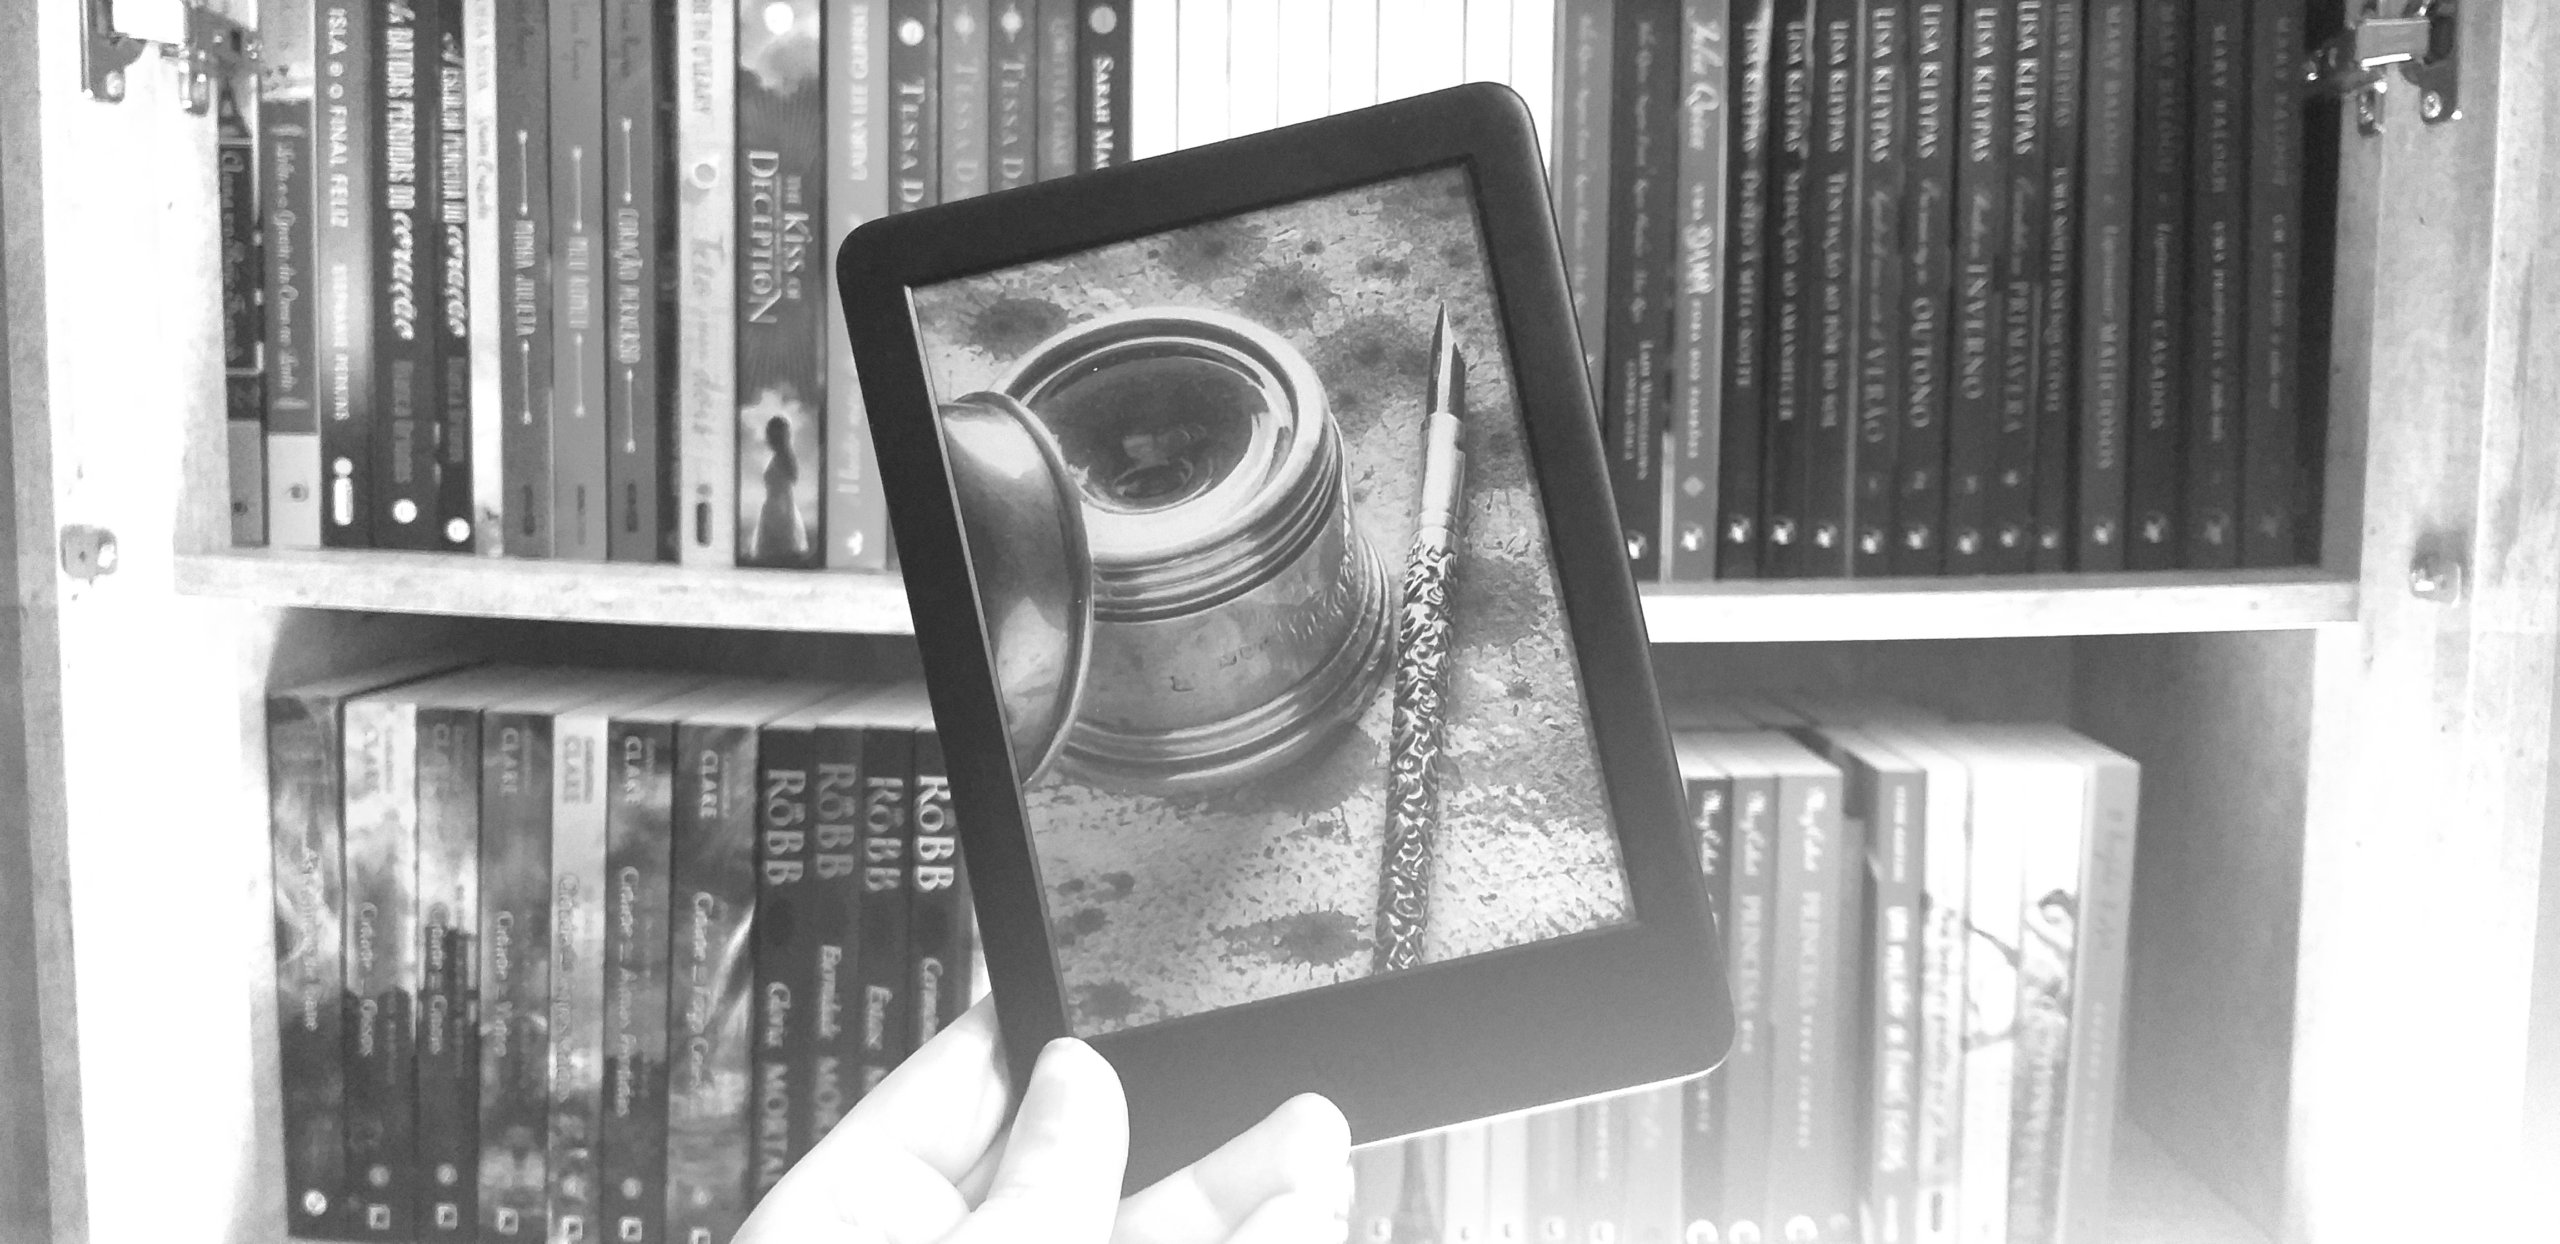 Por que eu demorei para comprar um Kindle? | Leitores Em Crise